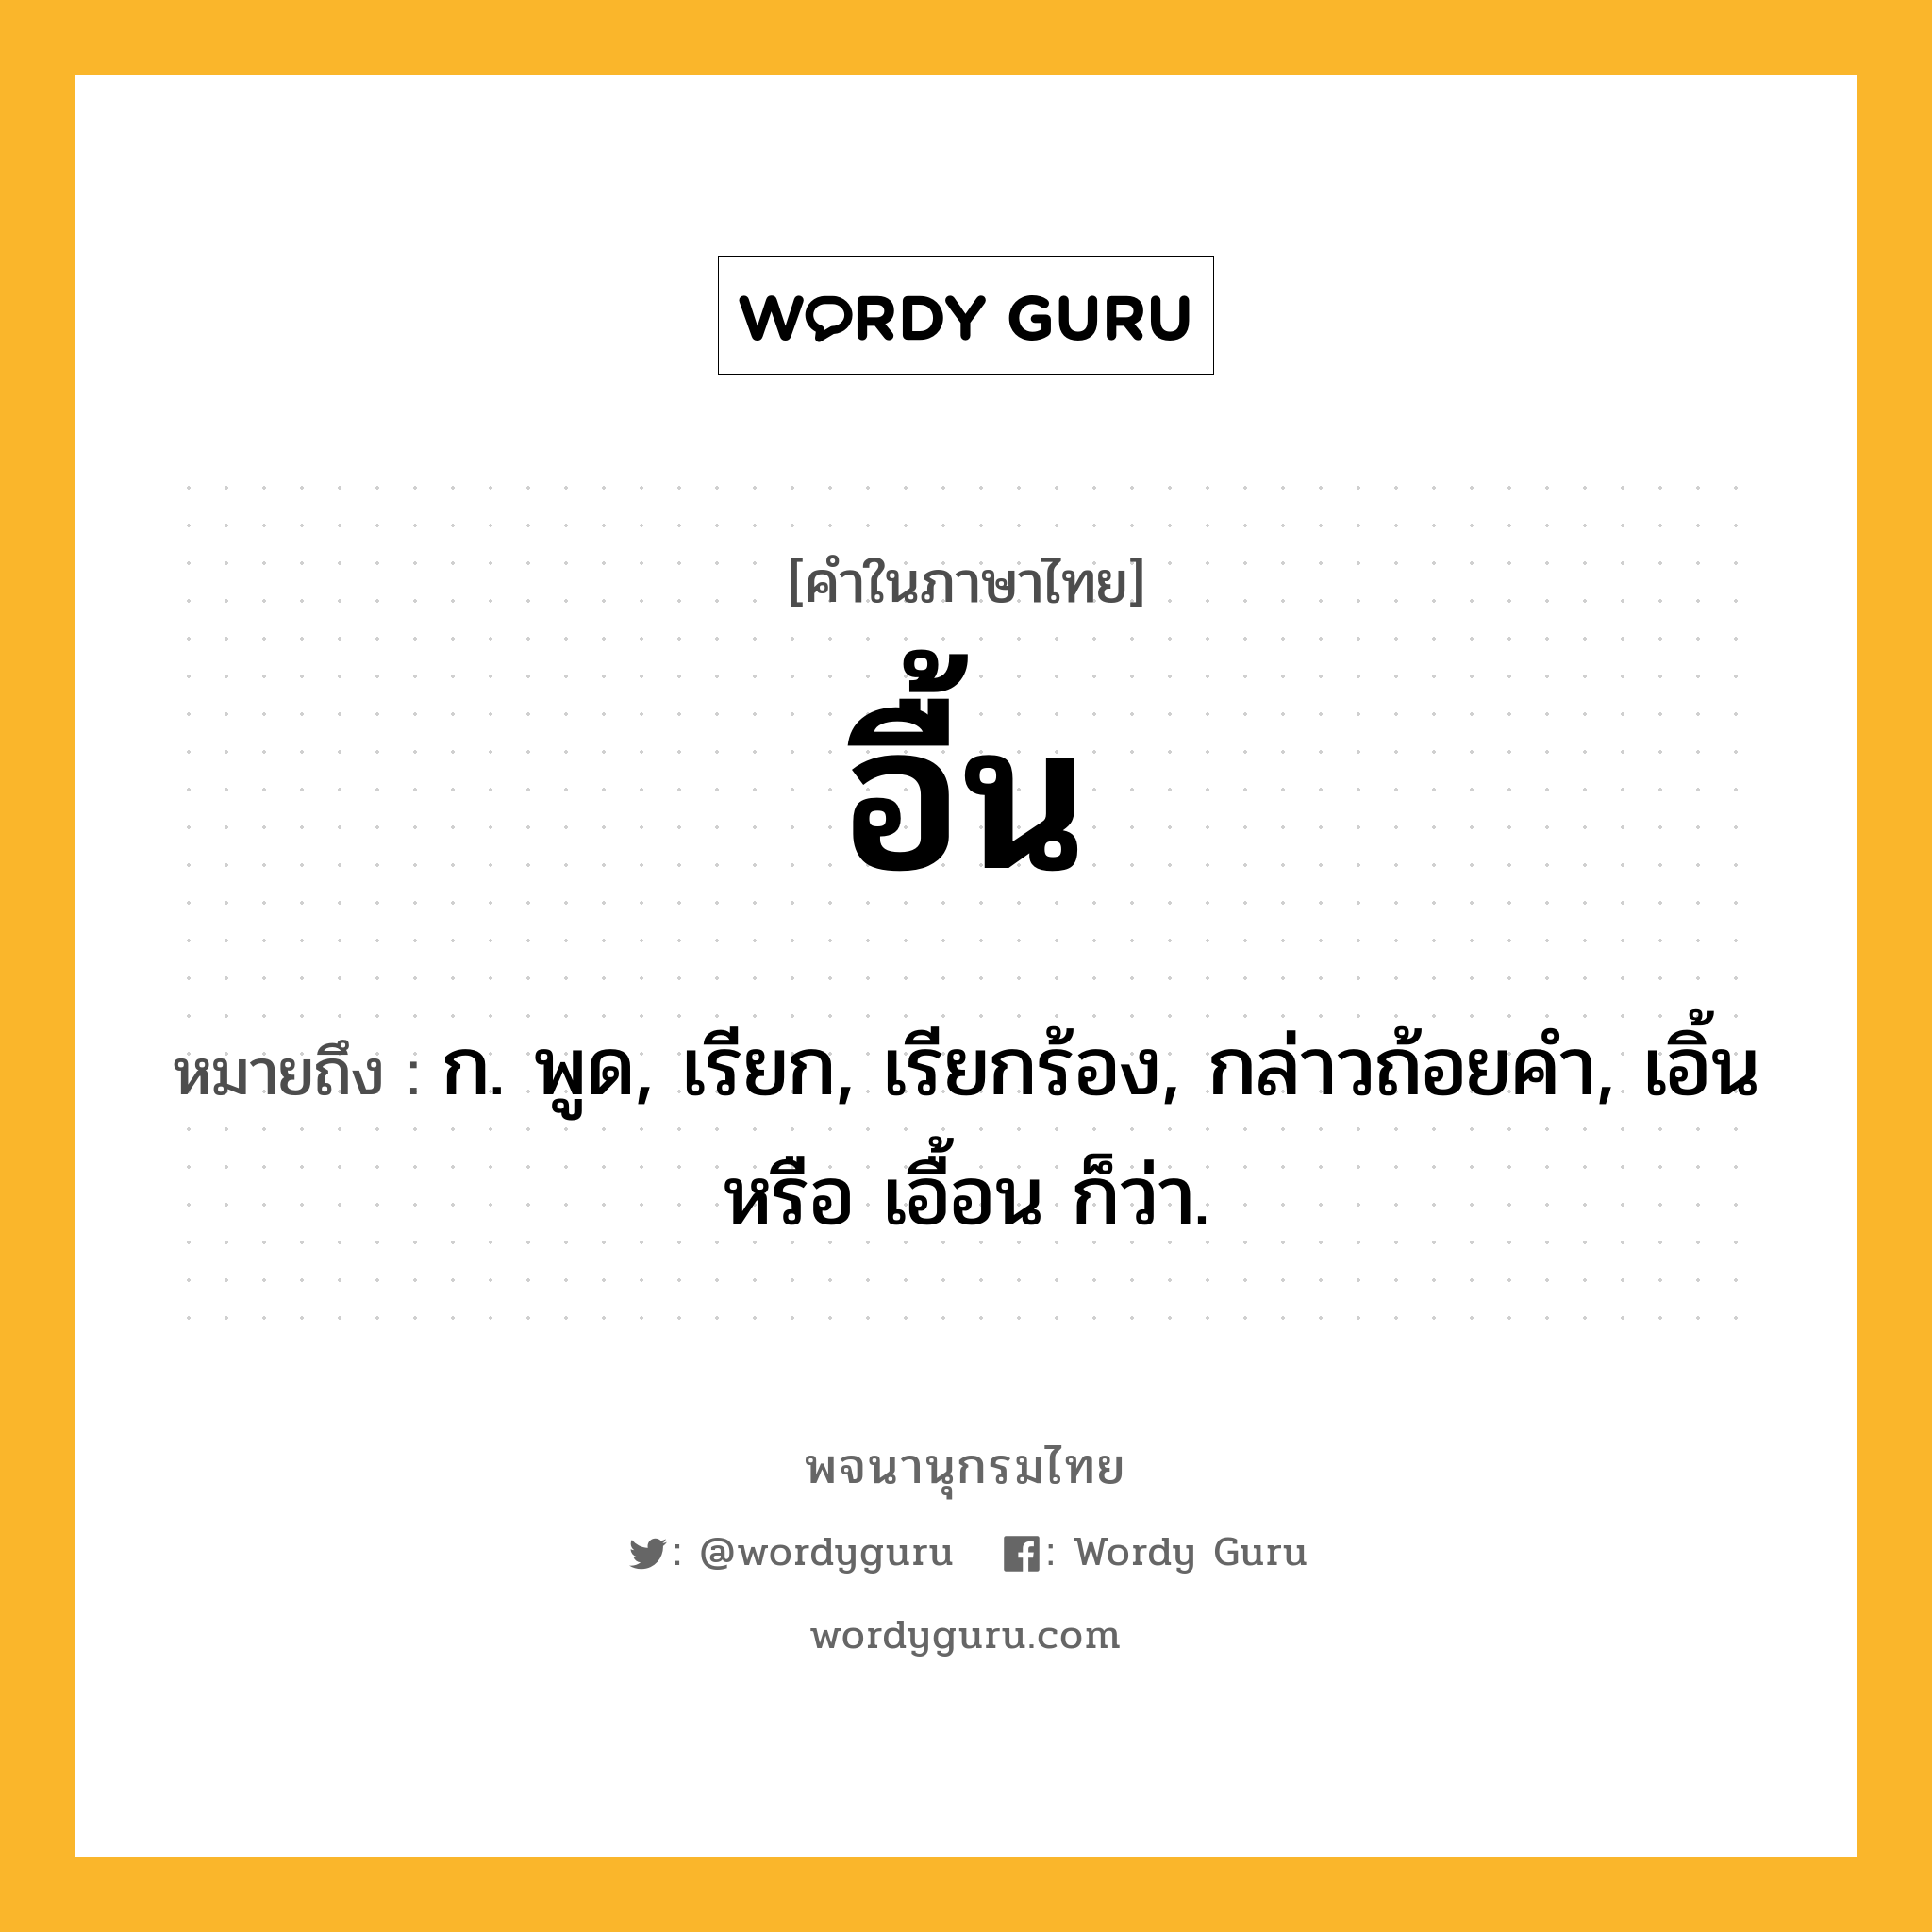 อื้น ความหมาย หมายถึงอะไร?, คำในภาษาไทย อื้น หมายถึง ก. พูด, เรียก, เรียกร้อง, กล่าวถ้อยคำ, เอิ้น หรือ เอื้อน ก็ว่า.